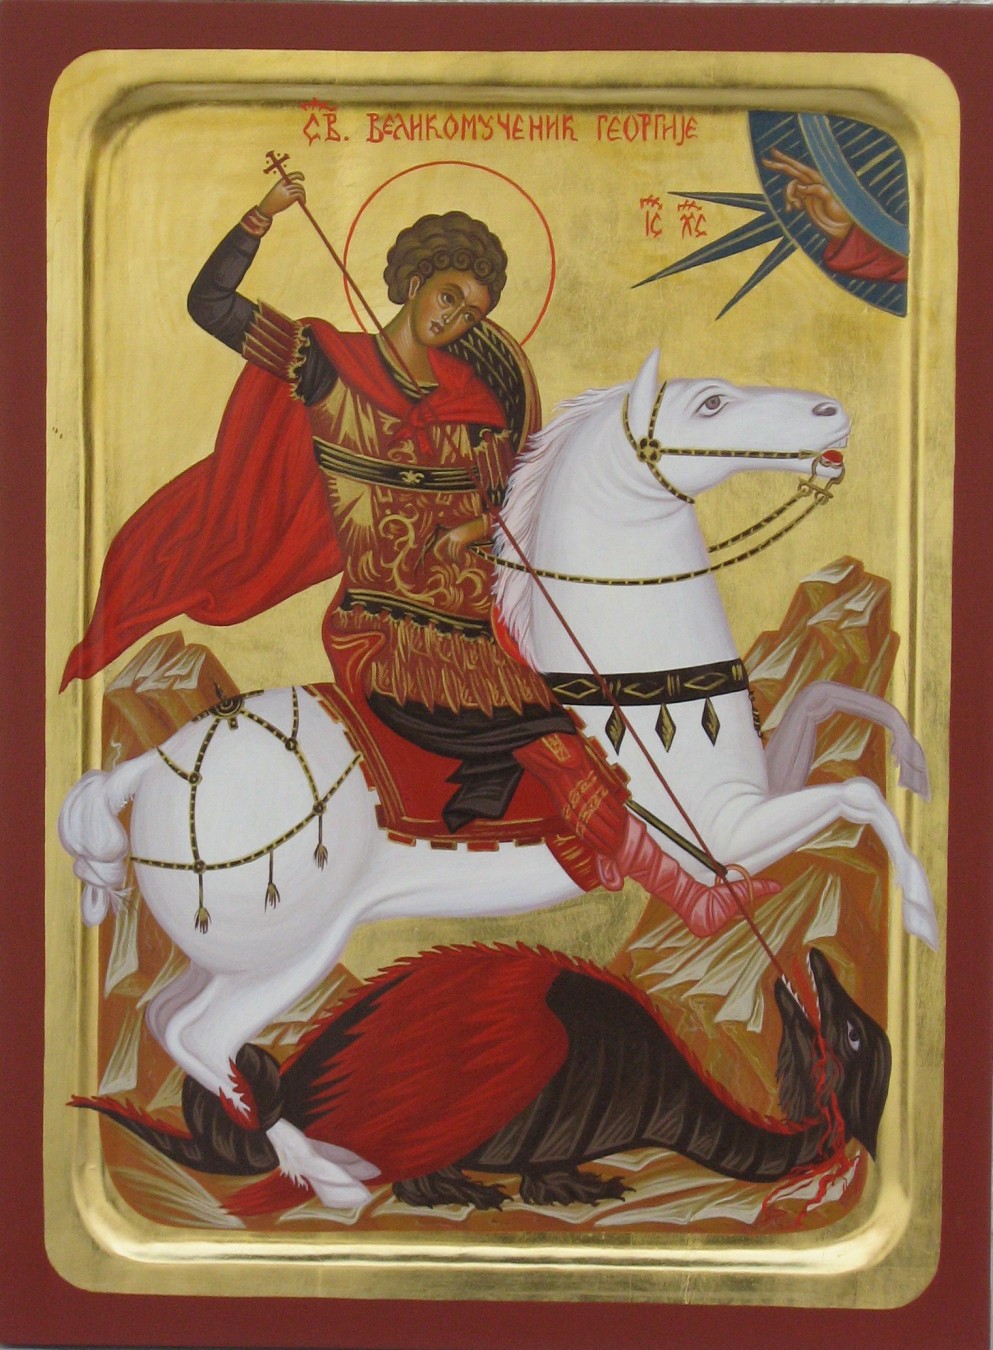 Sveti Georgije